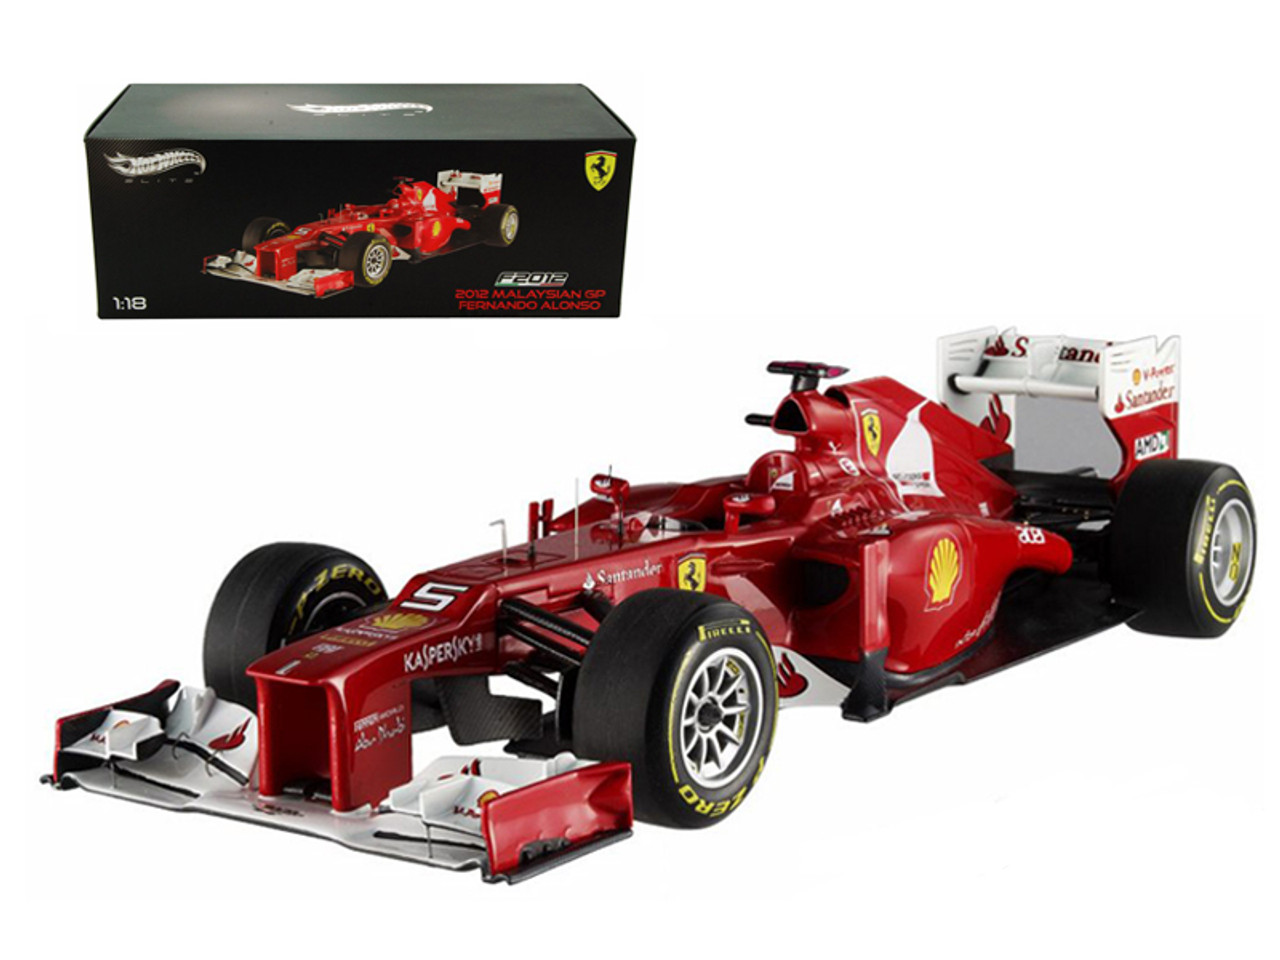 F2012 Fernando Alonso Malaysia GP 2012 F1 Elite Edition Limited to 5000pc 1/18 Diecast Model Car by Hotwheels